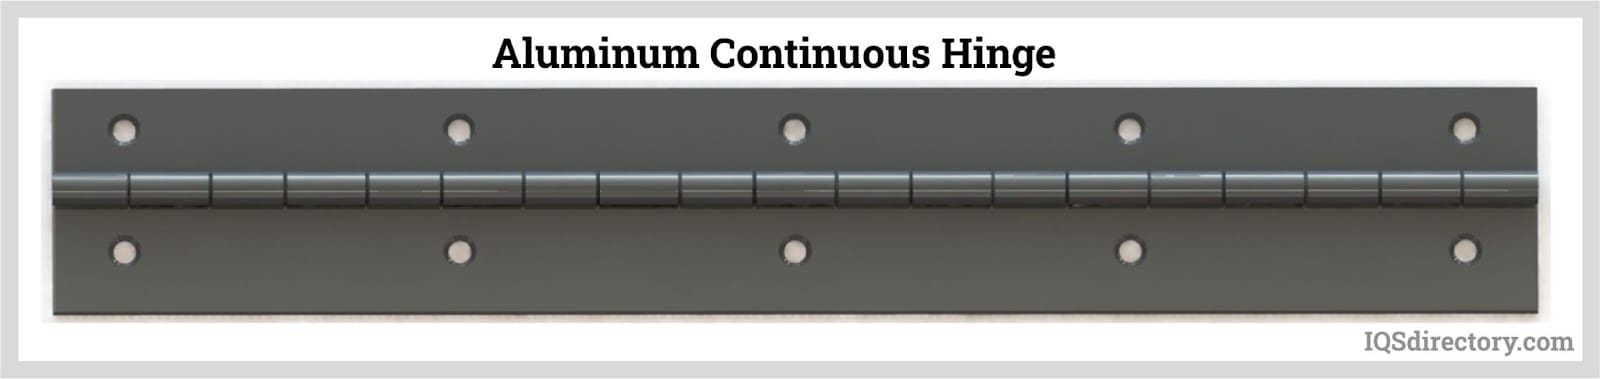 Aluminum Continuous Hinge